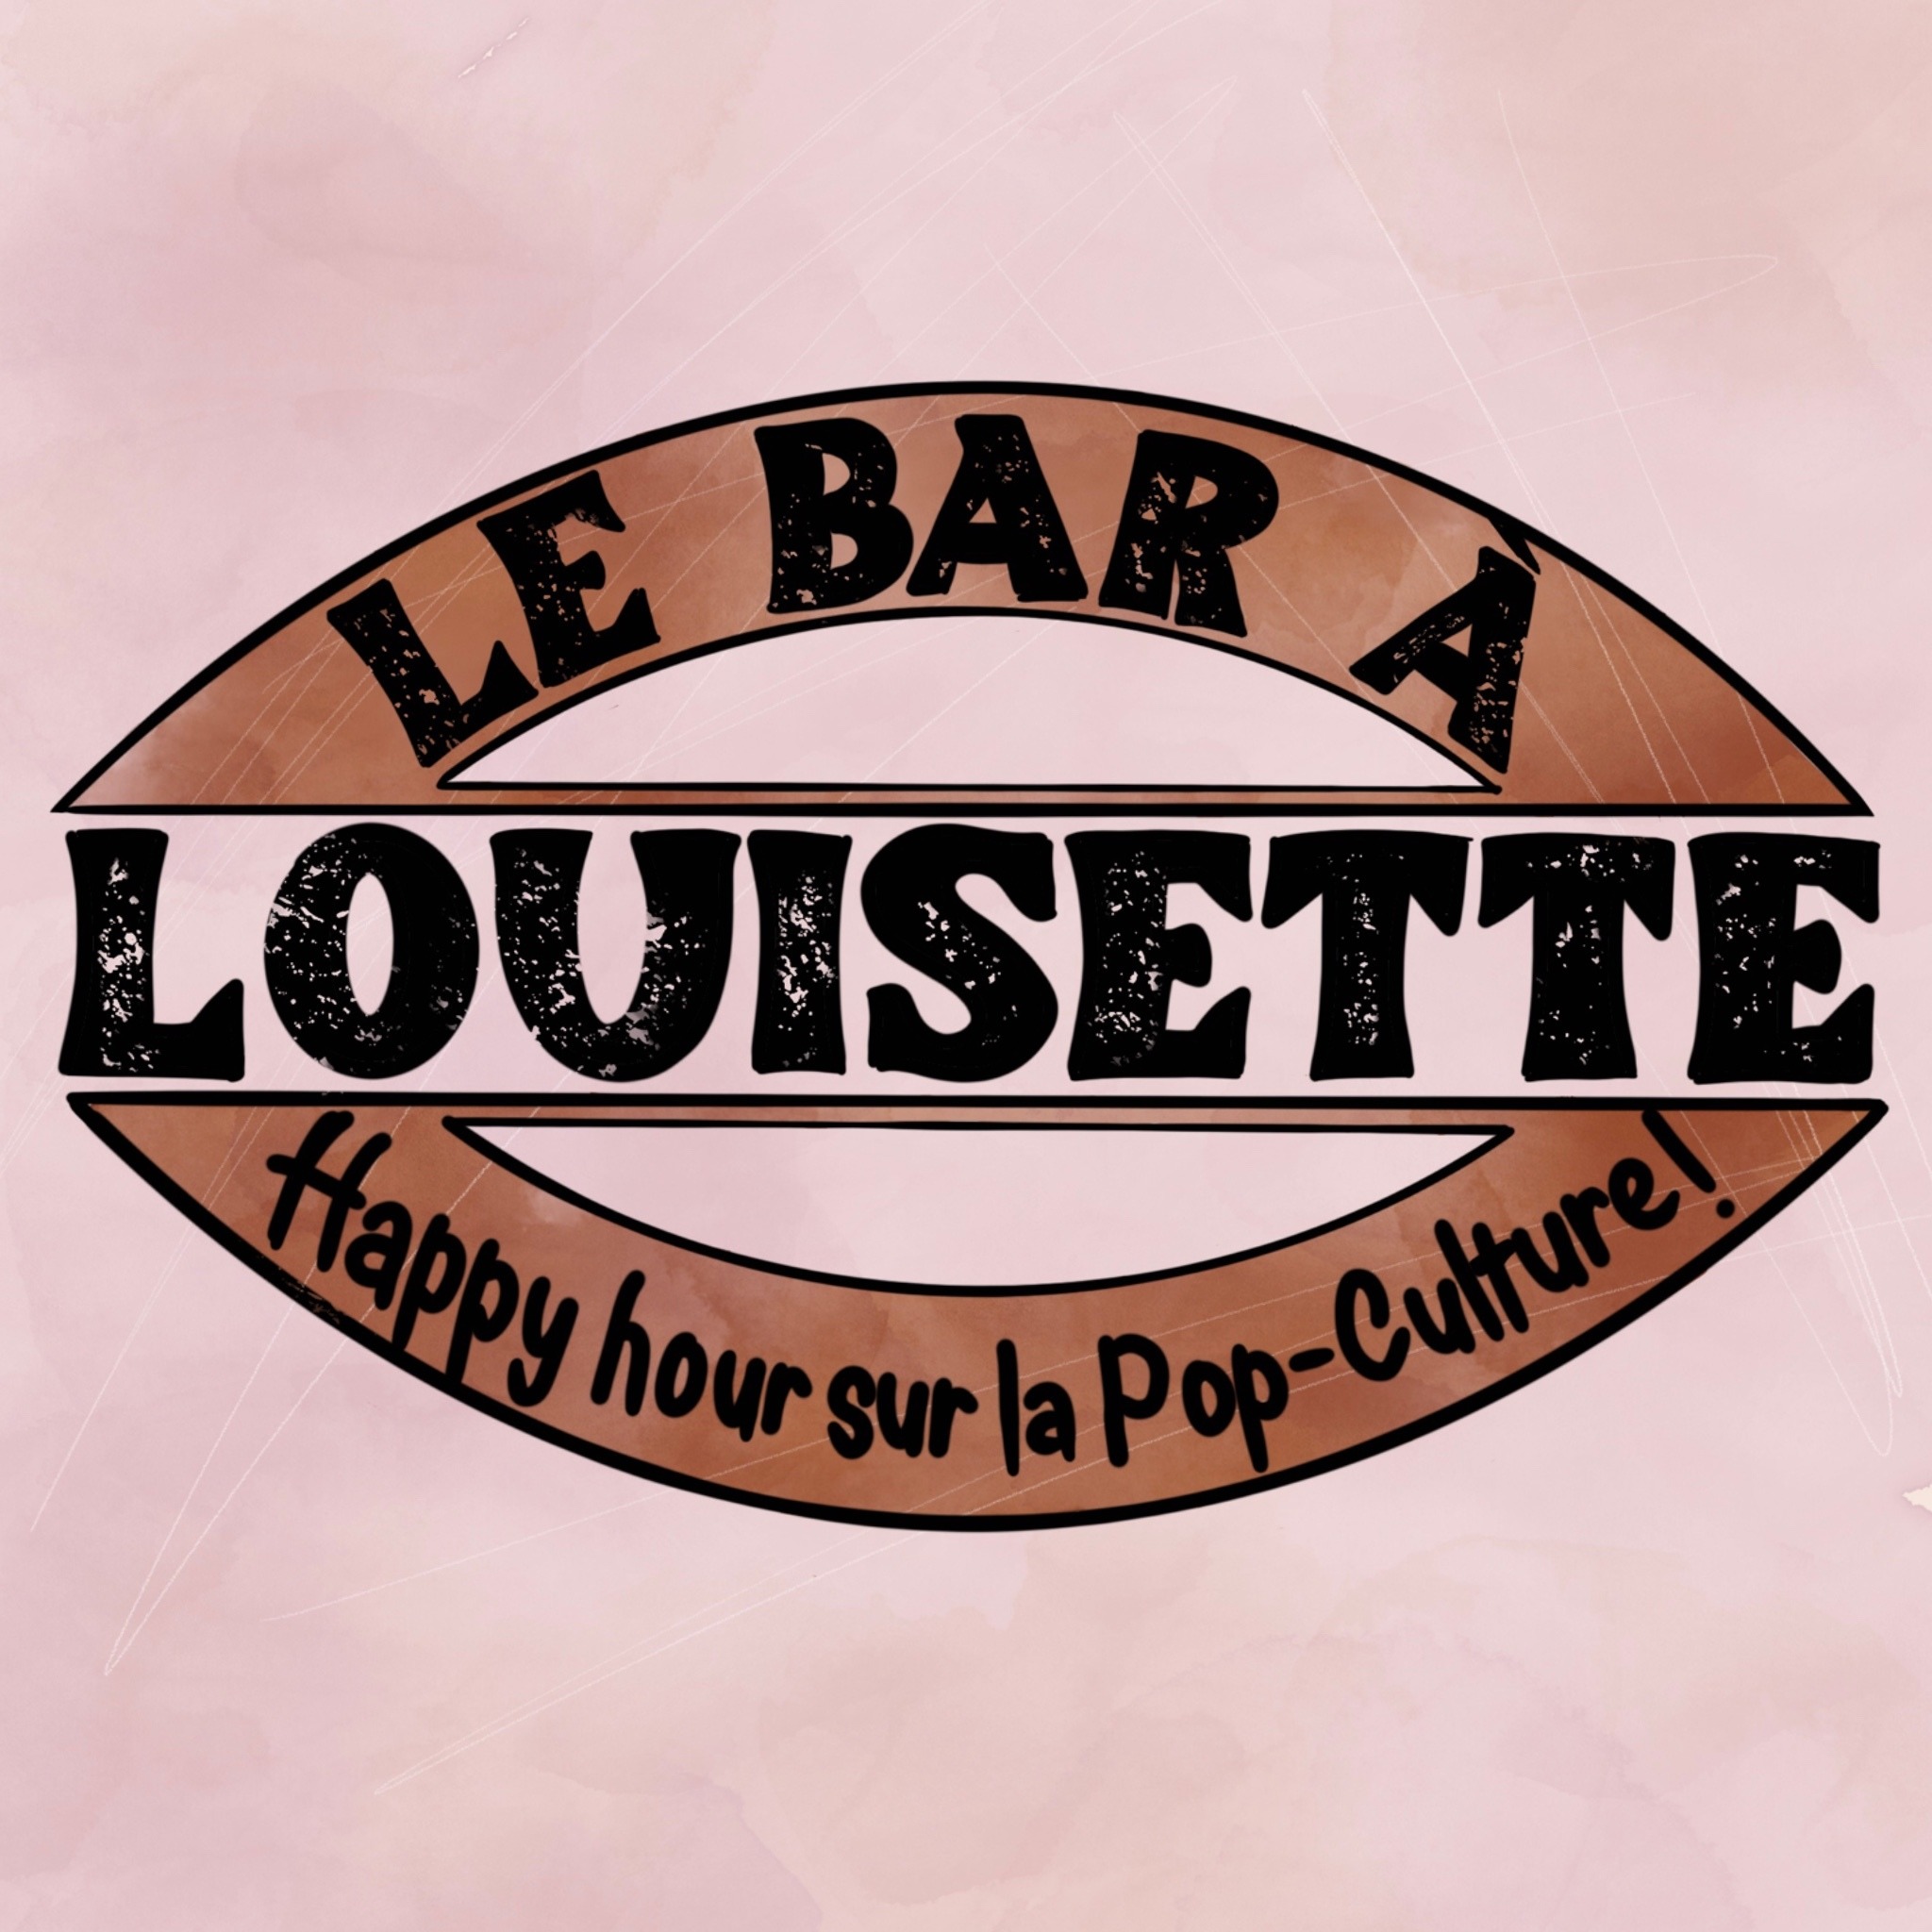 Le Bar à Louisette